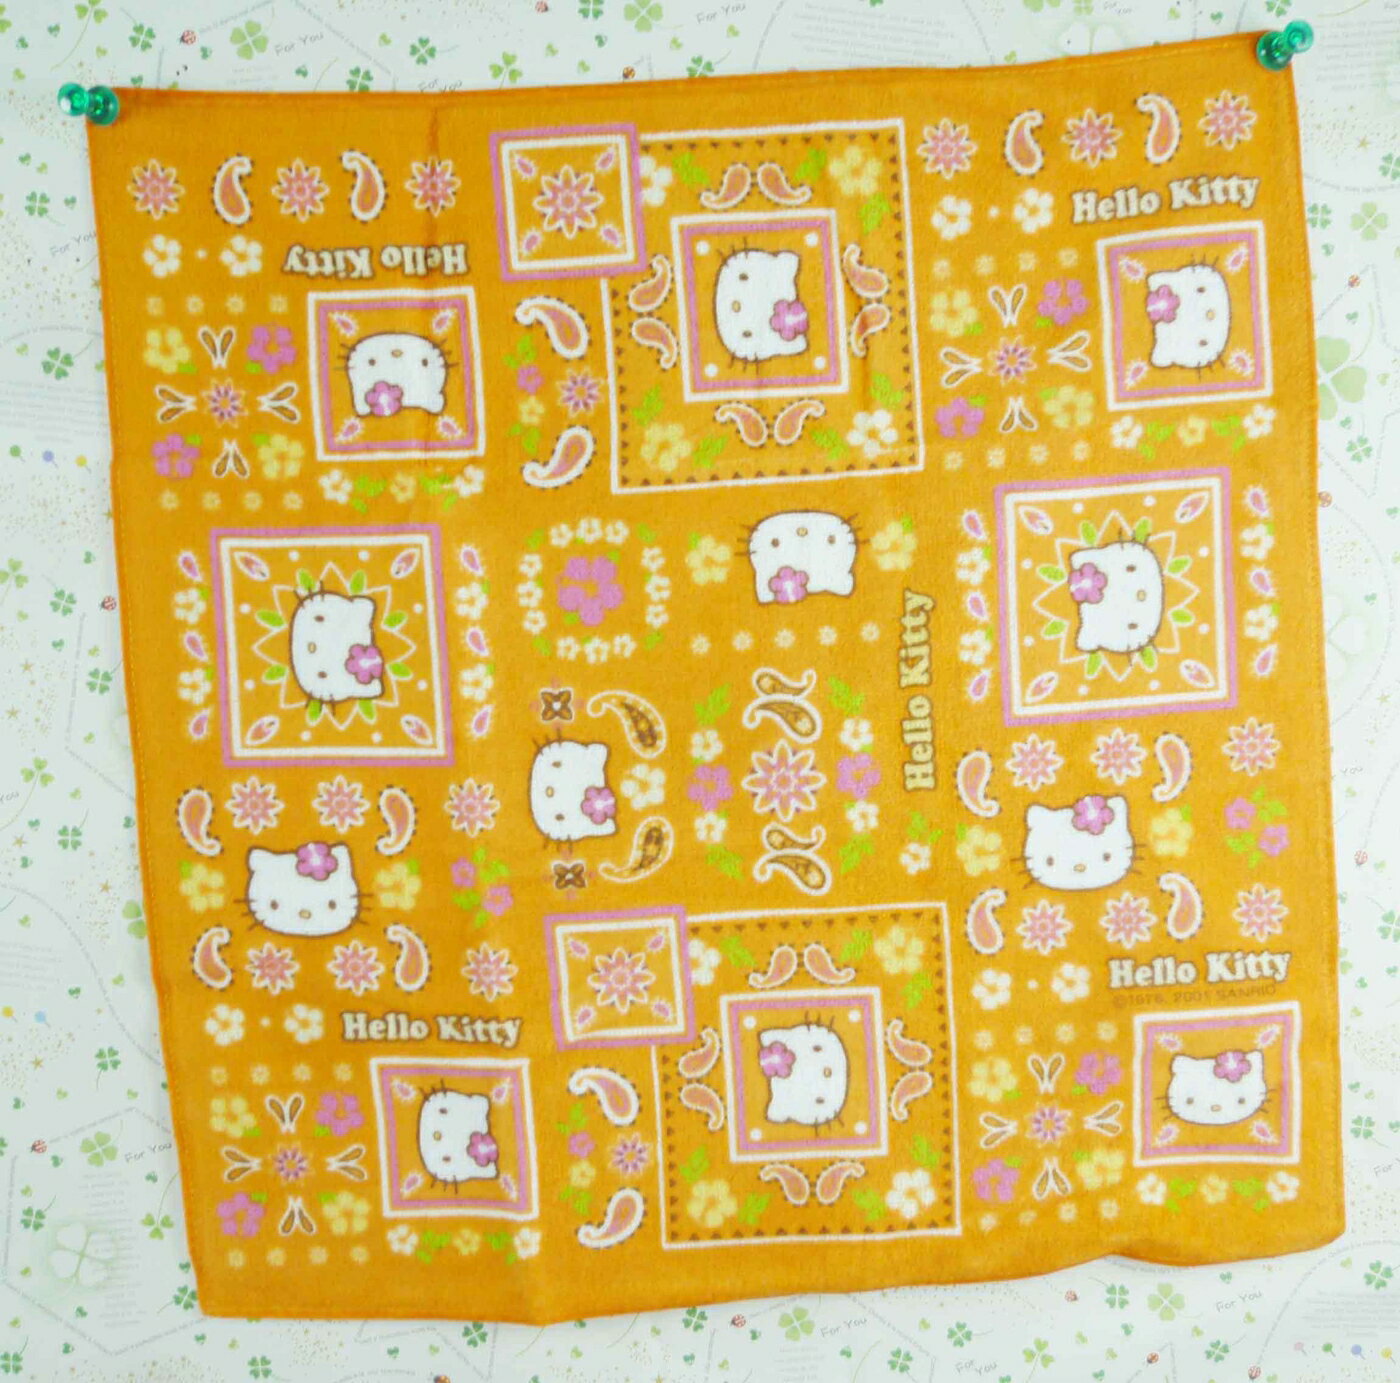 【震撼精品百貨】Hello Kitty 凱蒂貓 方巾/毛巾-橘色花朵 震撼日式精品百貨